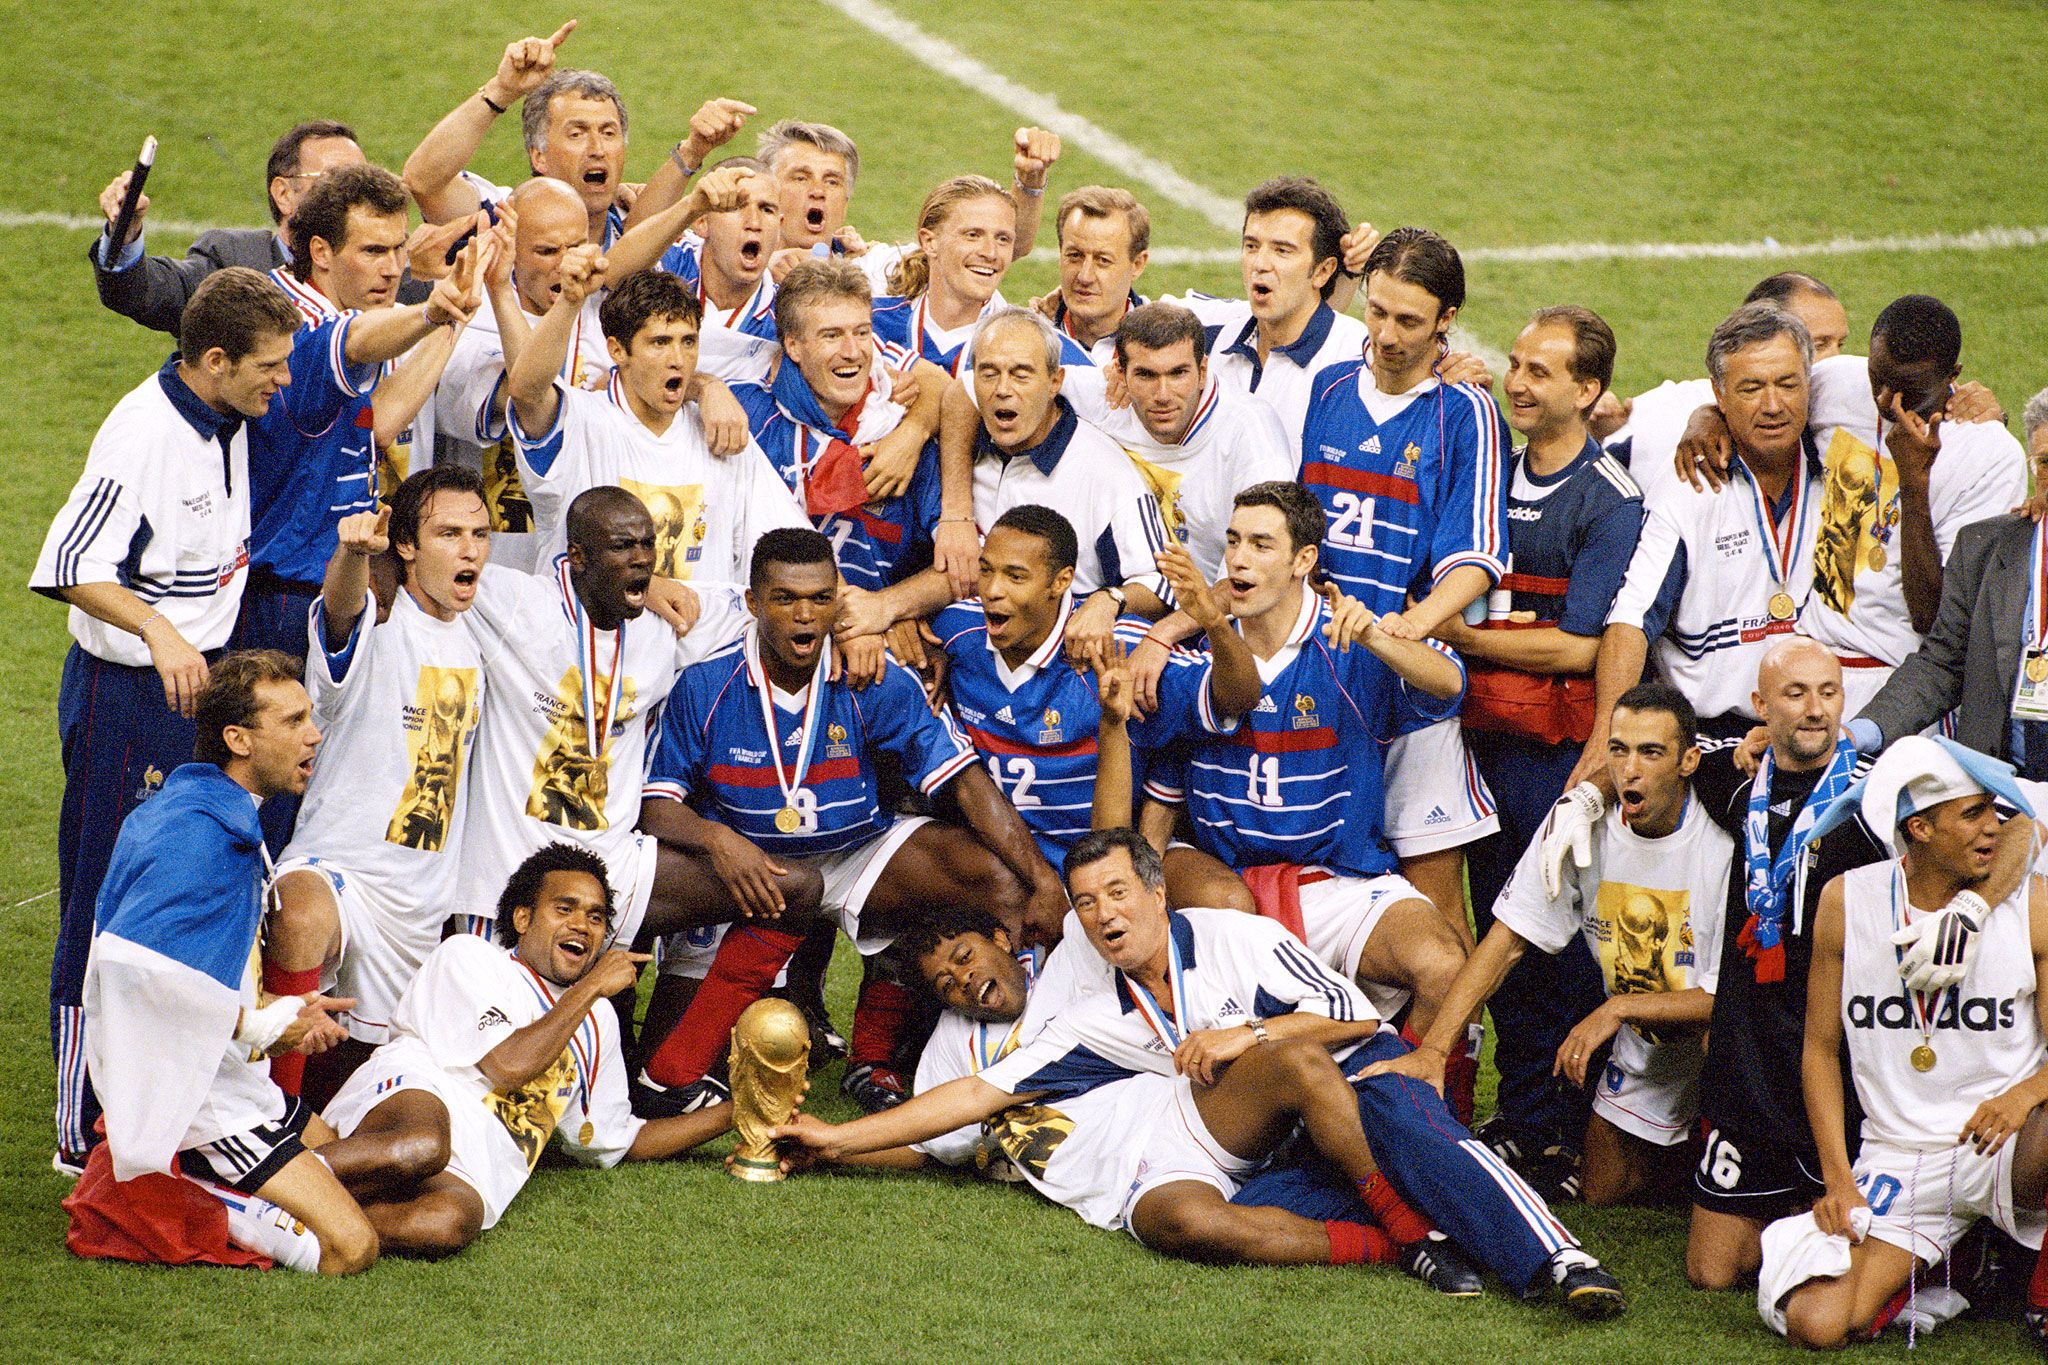 La selecció francesa, campiona del món el 1998, batejada com a “black-blanc-beur” per la seva composició multiètnica